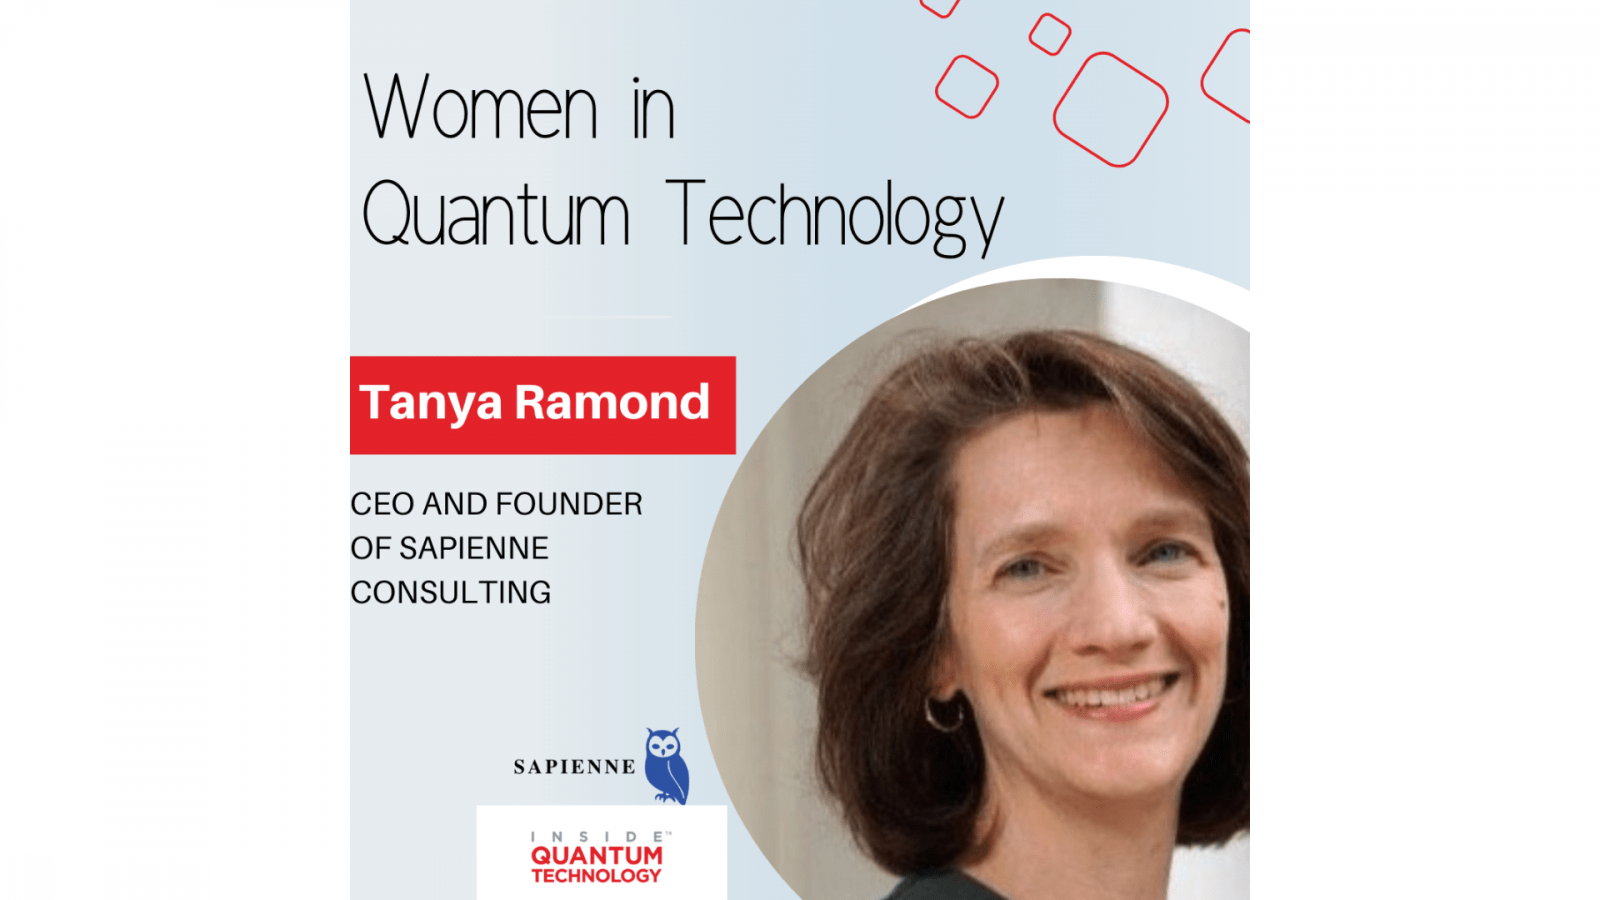 Tanya Ramond, administrerende direktør og grunnlegger av Sapienne Consulting, diskuterer sin historie og reise inn i kvanteindustrien.